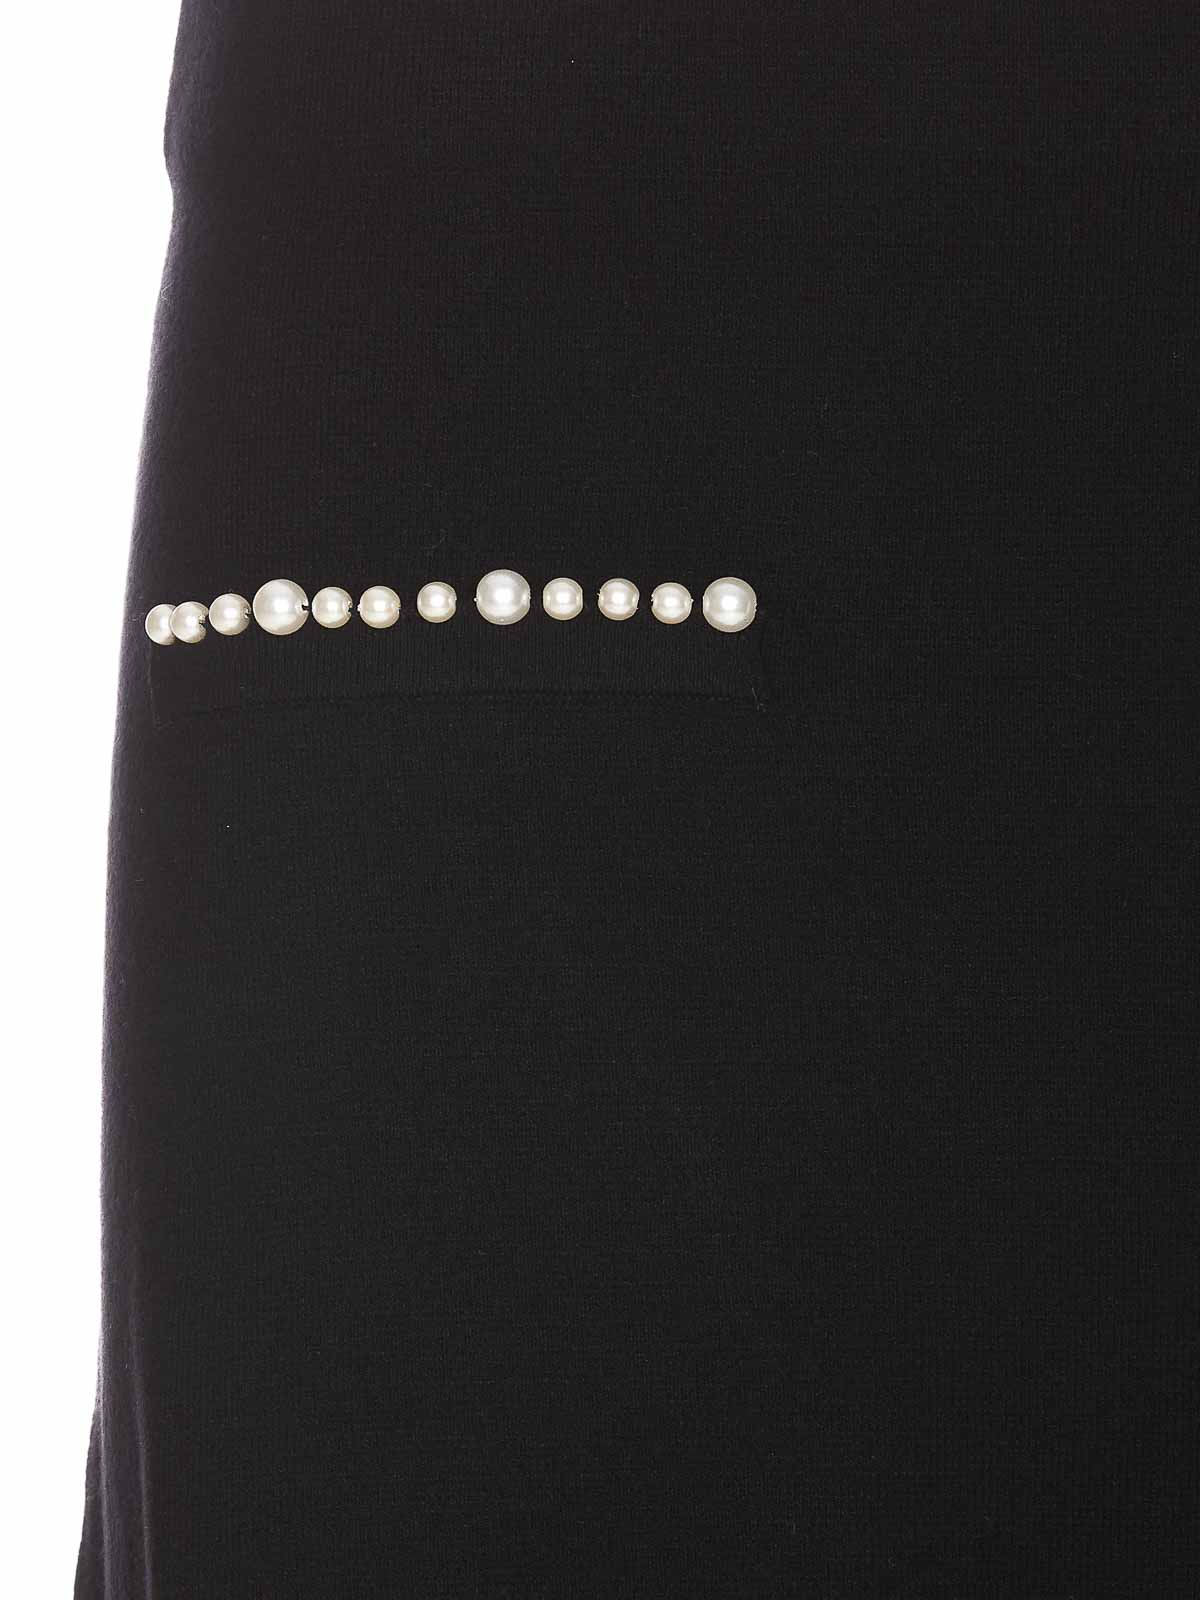 Shop Liu •jo Black Skirt Mini Model Pearls On